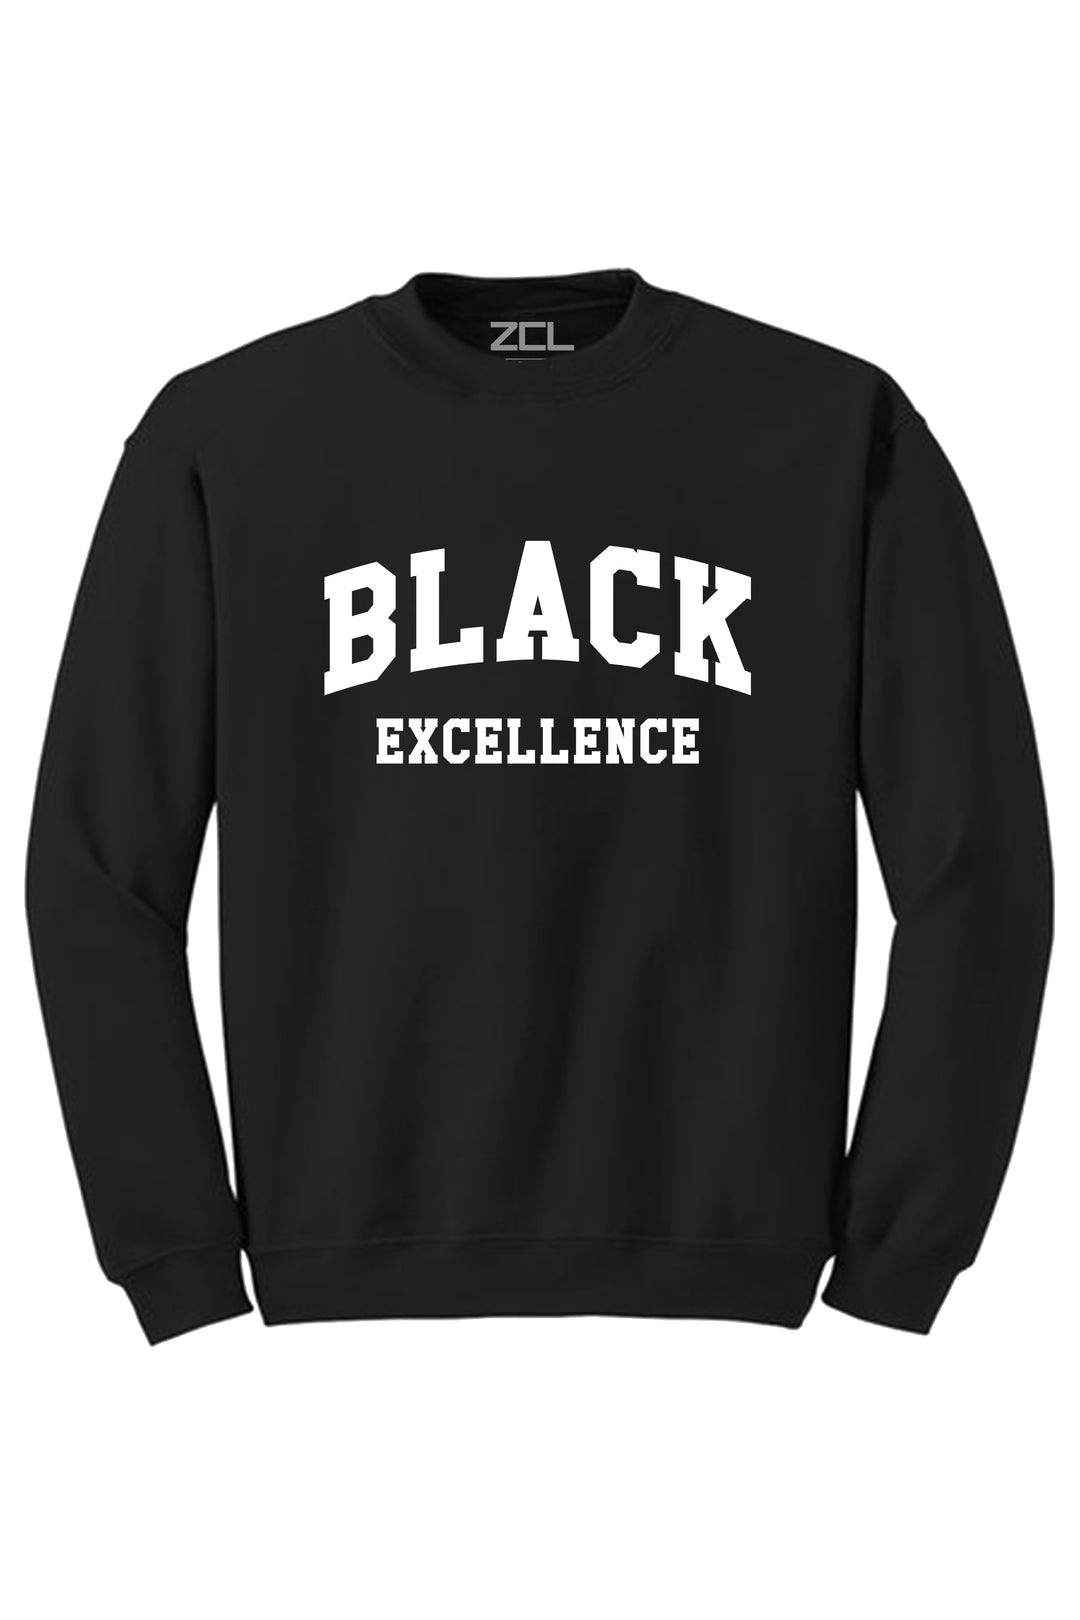 Black Excellence Crewneck Sweatshirt (White Logo) - Zamage